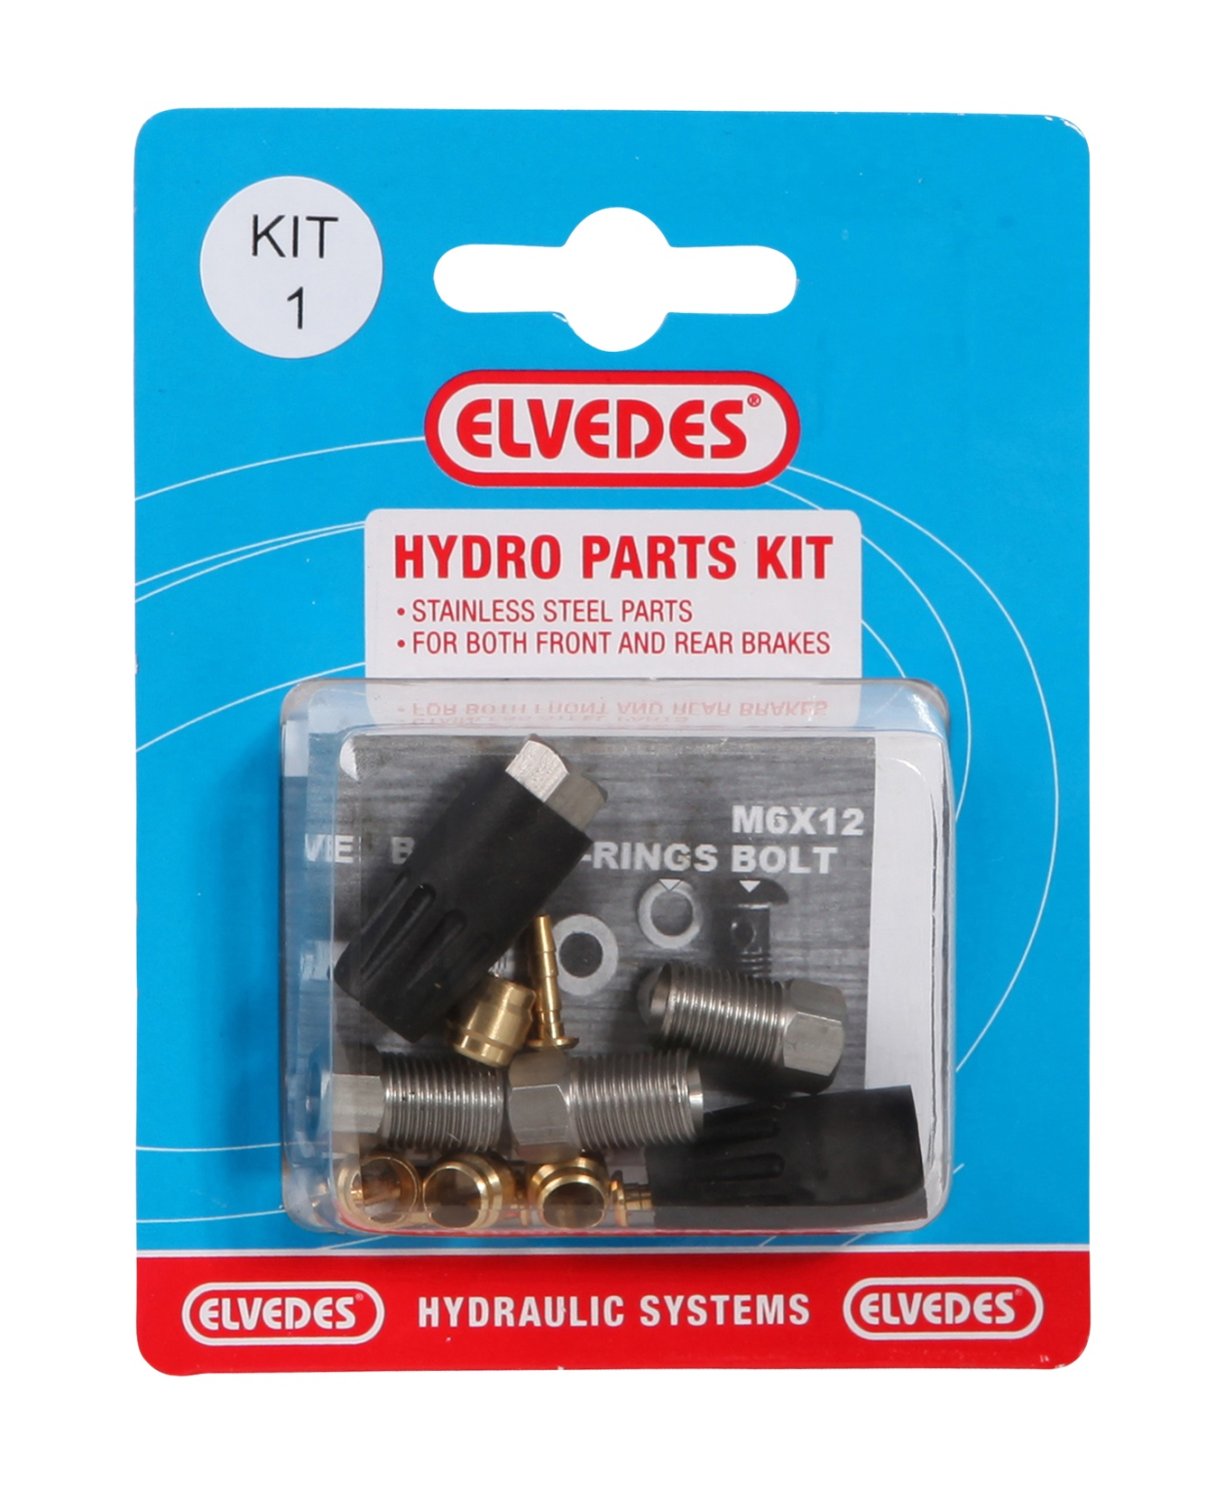 Велосипедный набор для гидролинии ELVEDES Kit 1 (М8 + М8), для переднего и заднего тормозов , для Shimano, 2011012 велосипедный фиксирующий болт elvedes м43 для hayes ryde dyno 2017183